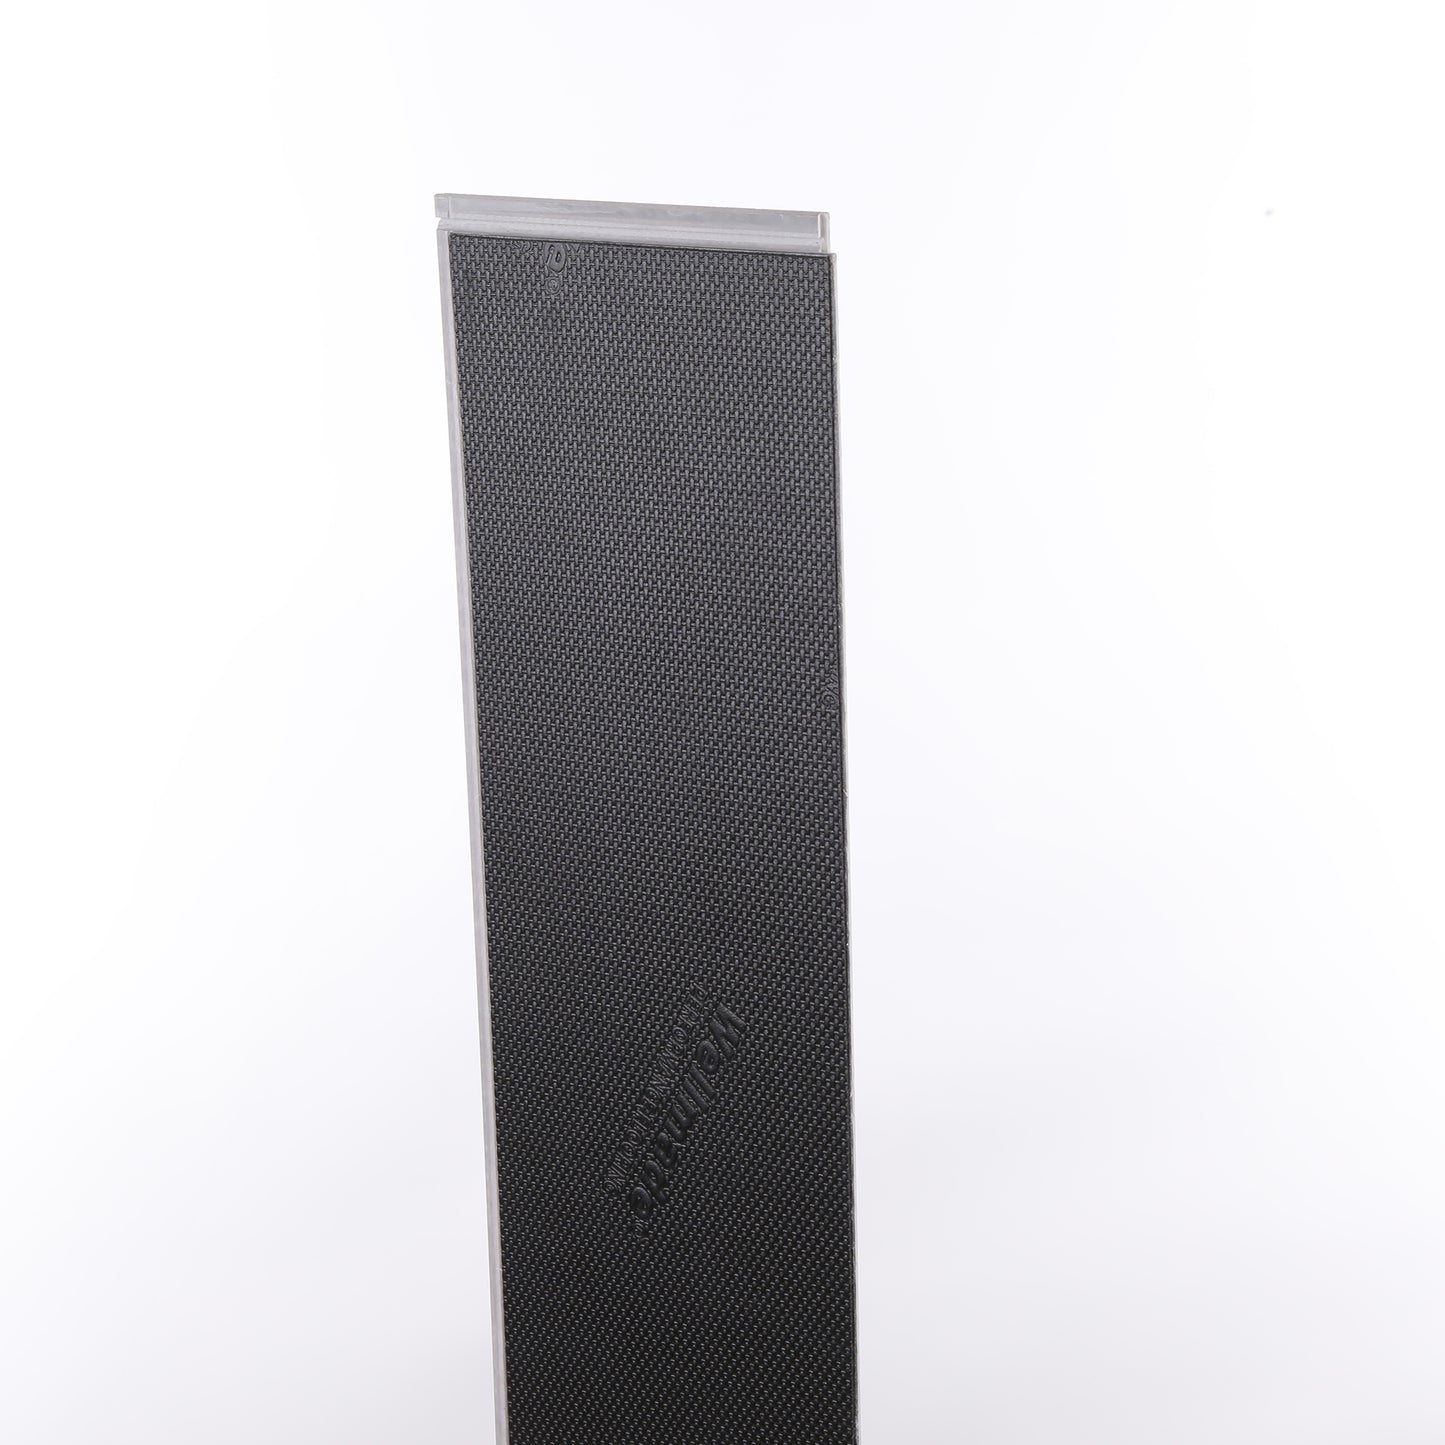 7mm Glenwood Waterproof Engineered Hardwood Flooring 5 in. Wide x Varying Length Long